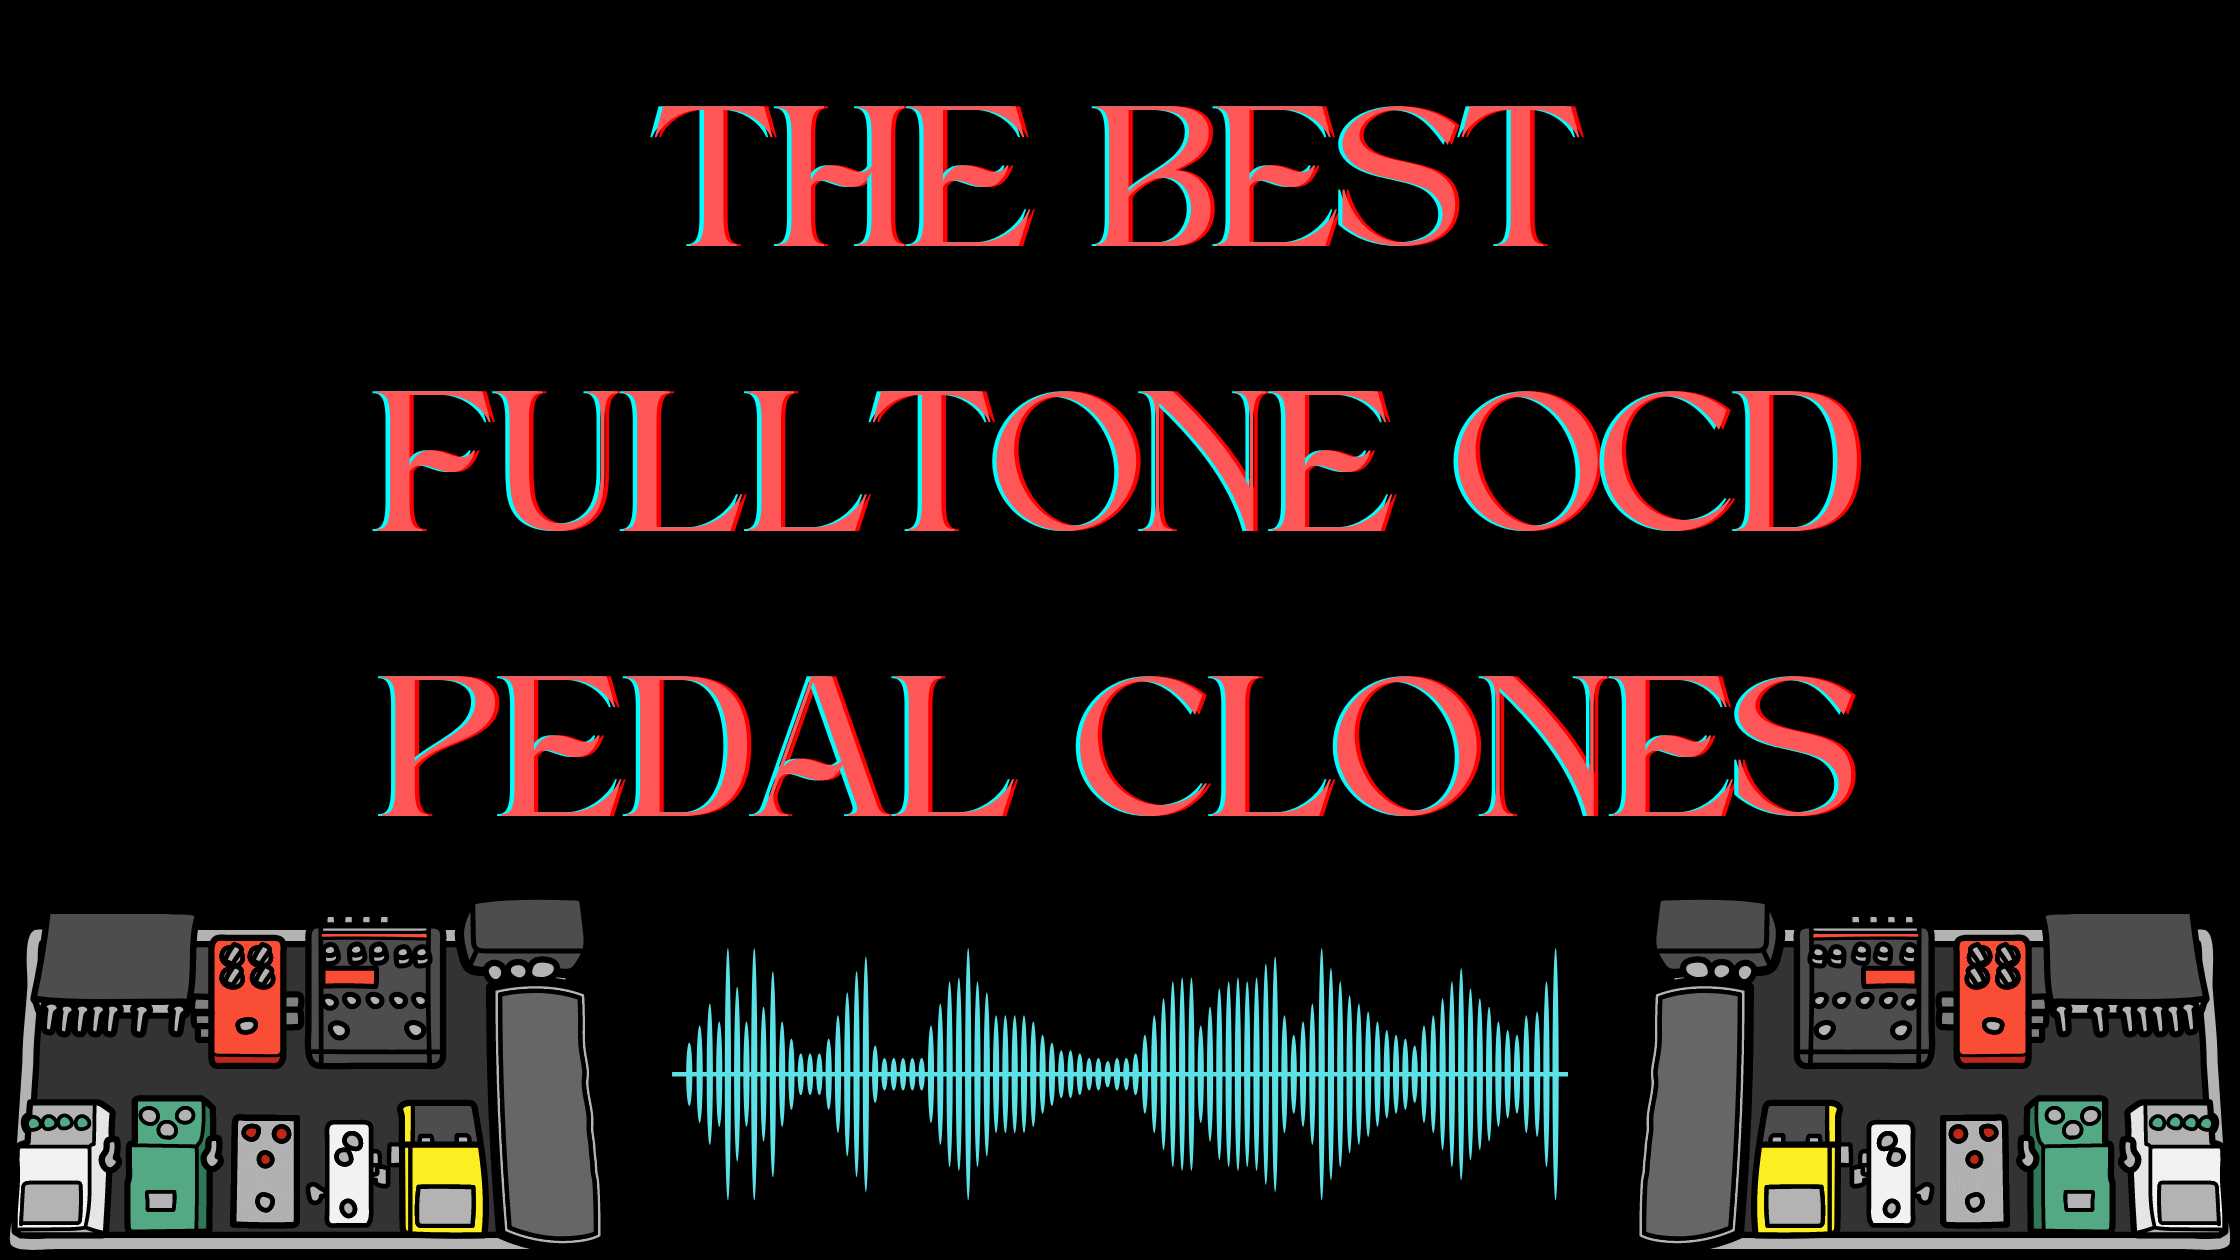 THE BEST FULLTONE OCD PEDAL CLONES: FULLTONE OCD CLONE